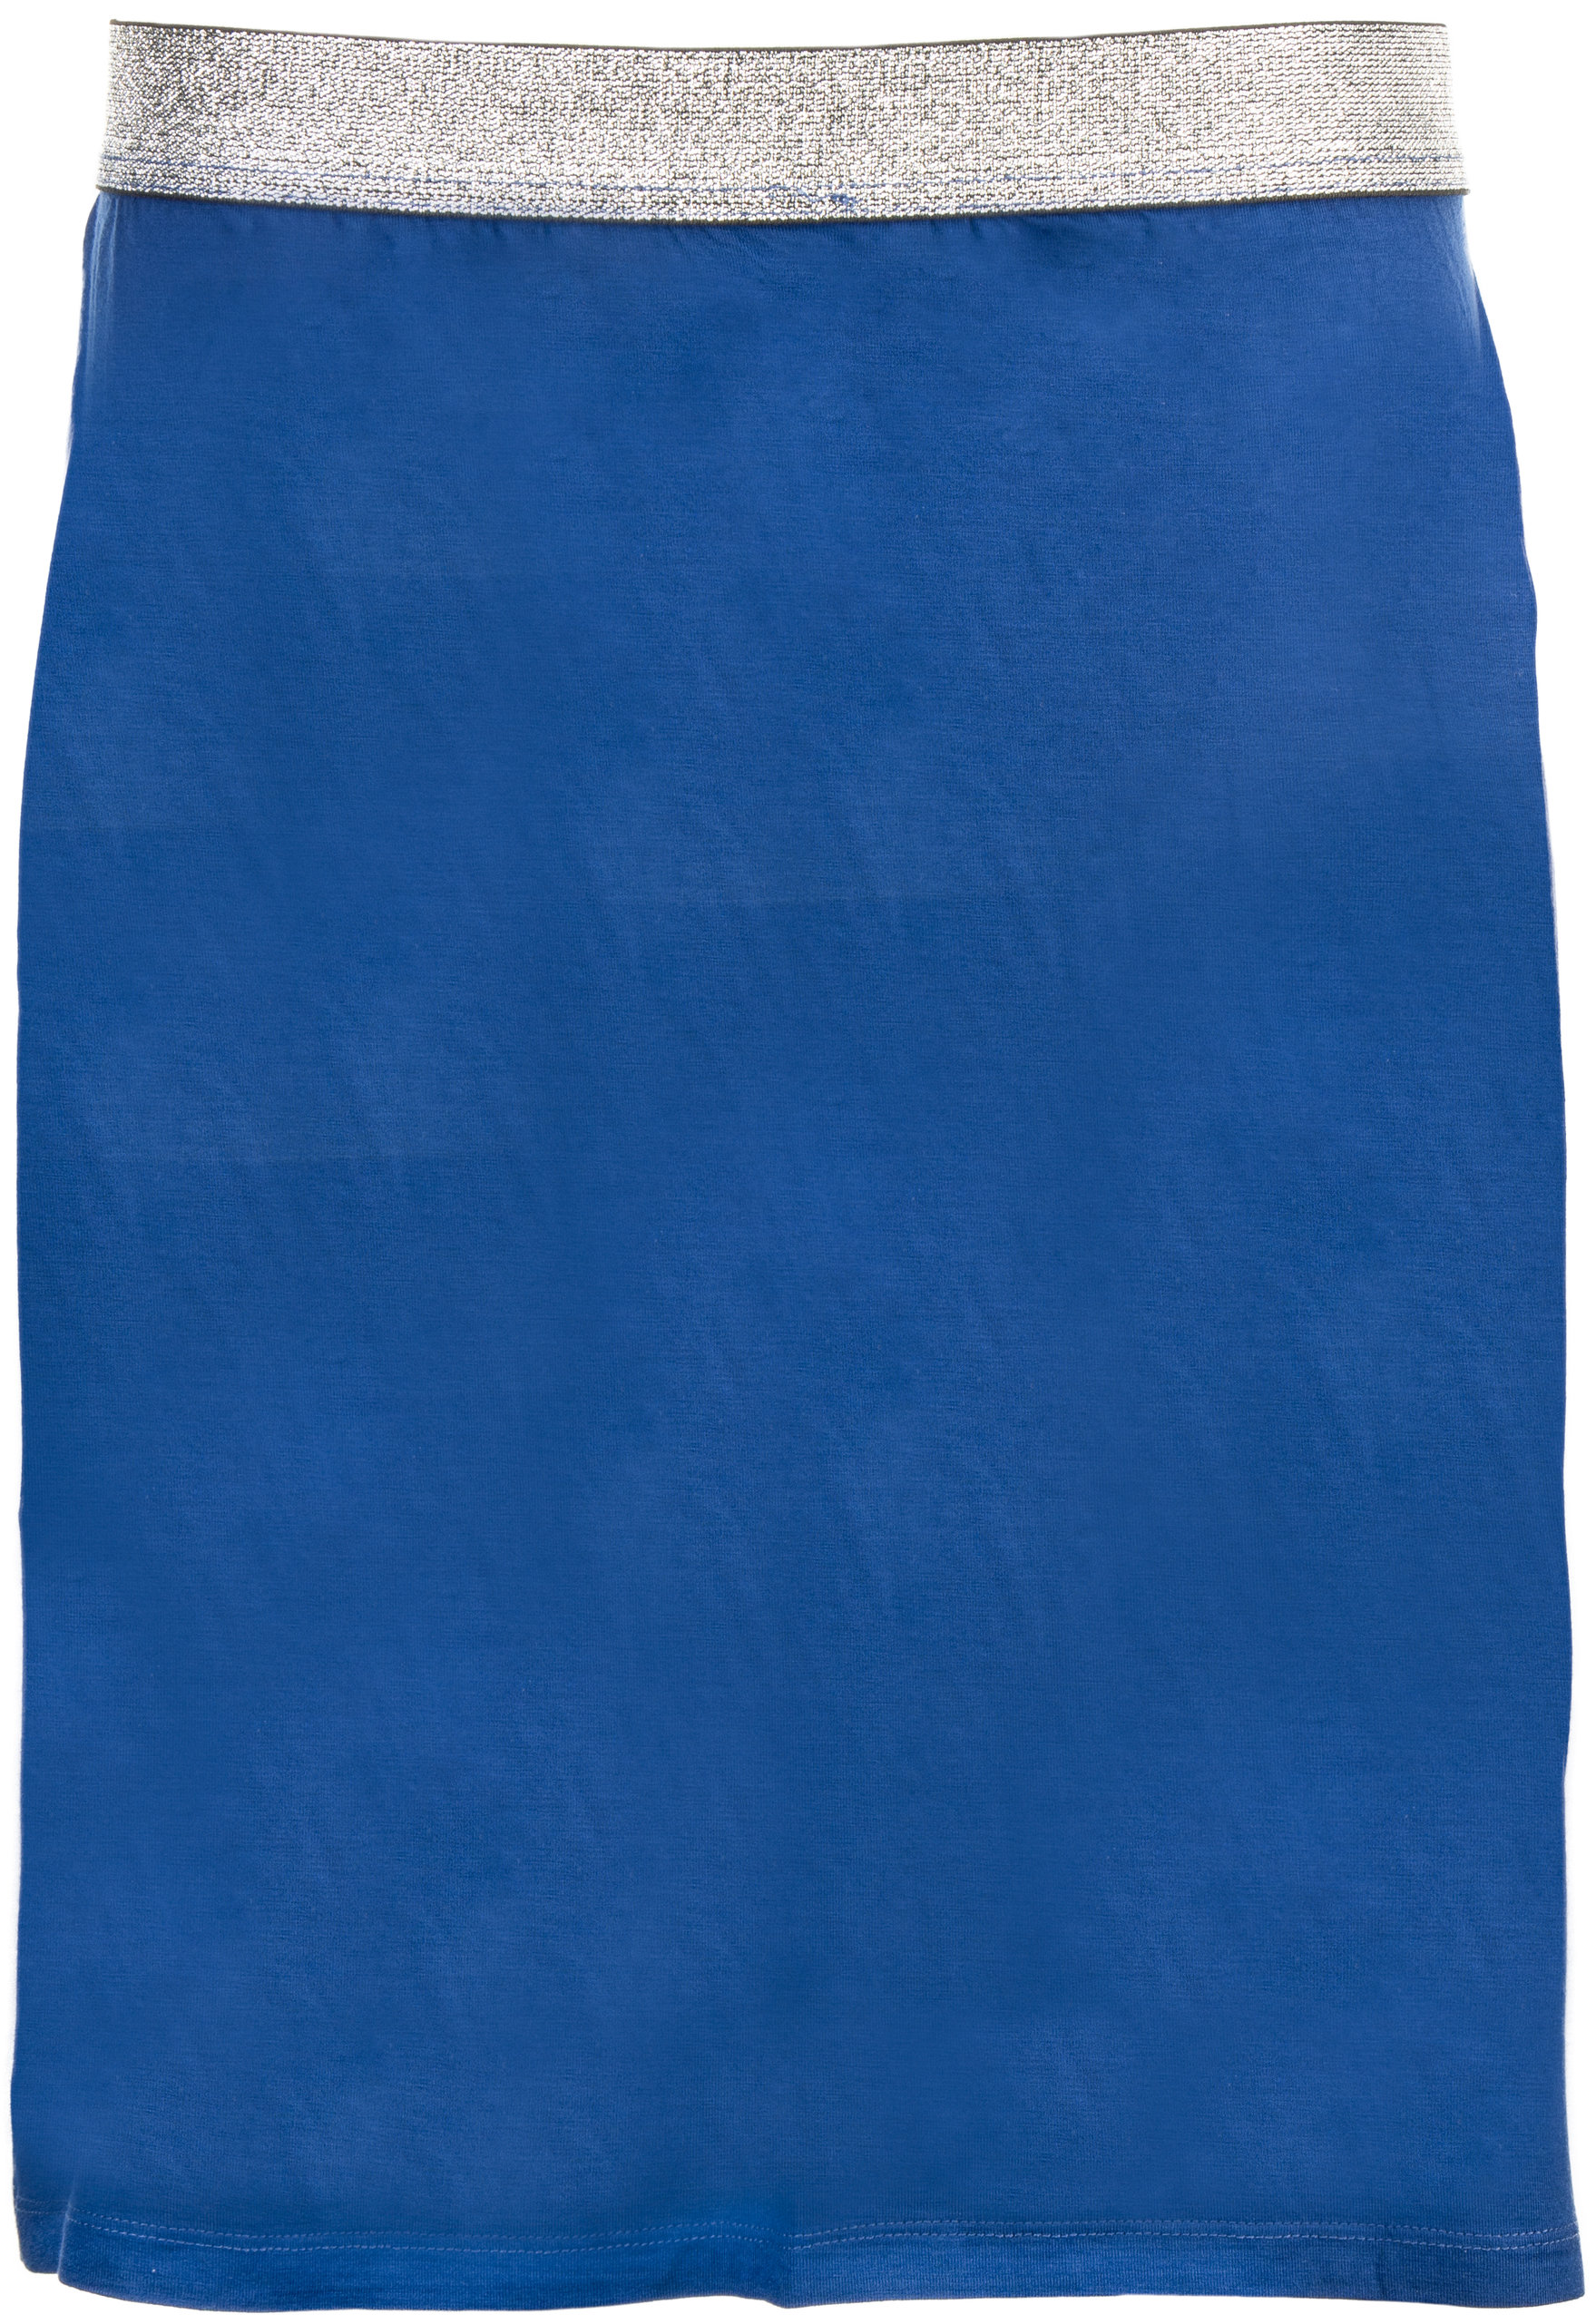 Dámská sukně ALPINE PRO JARAGA modrá